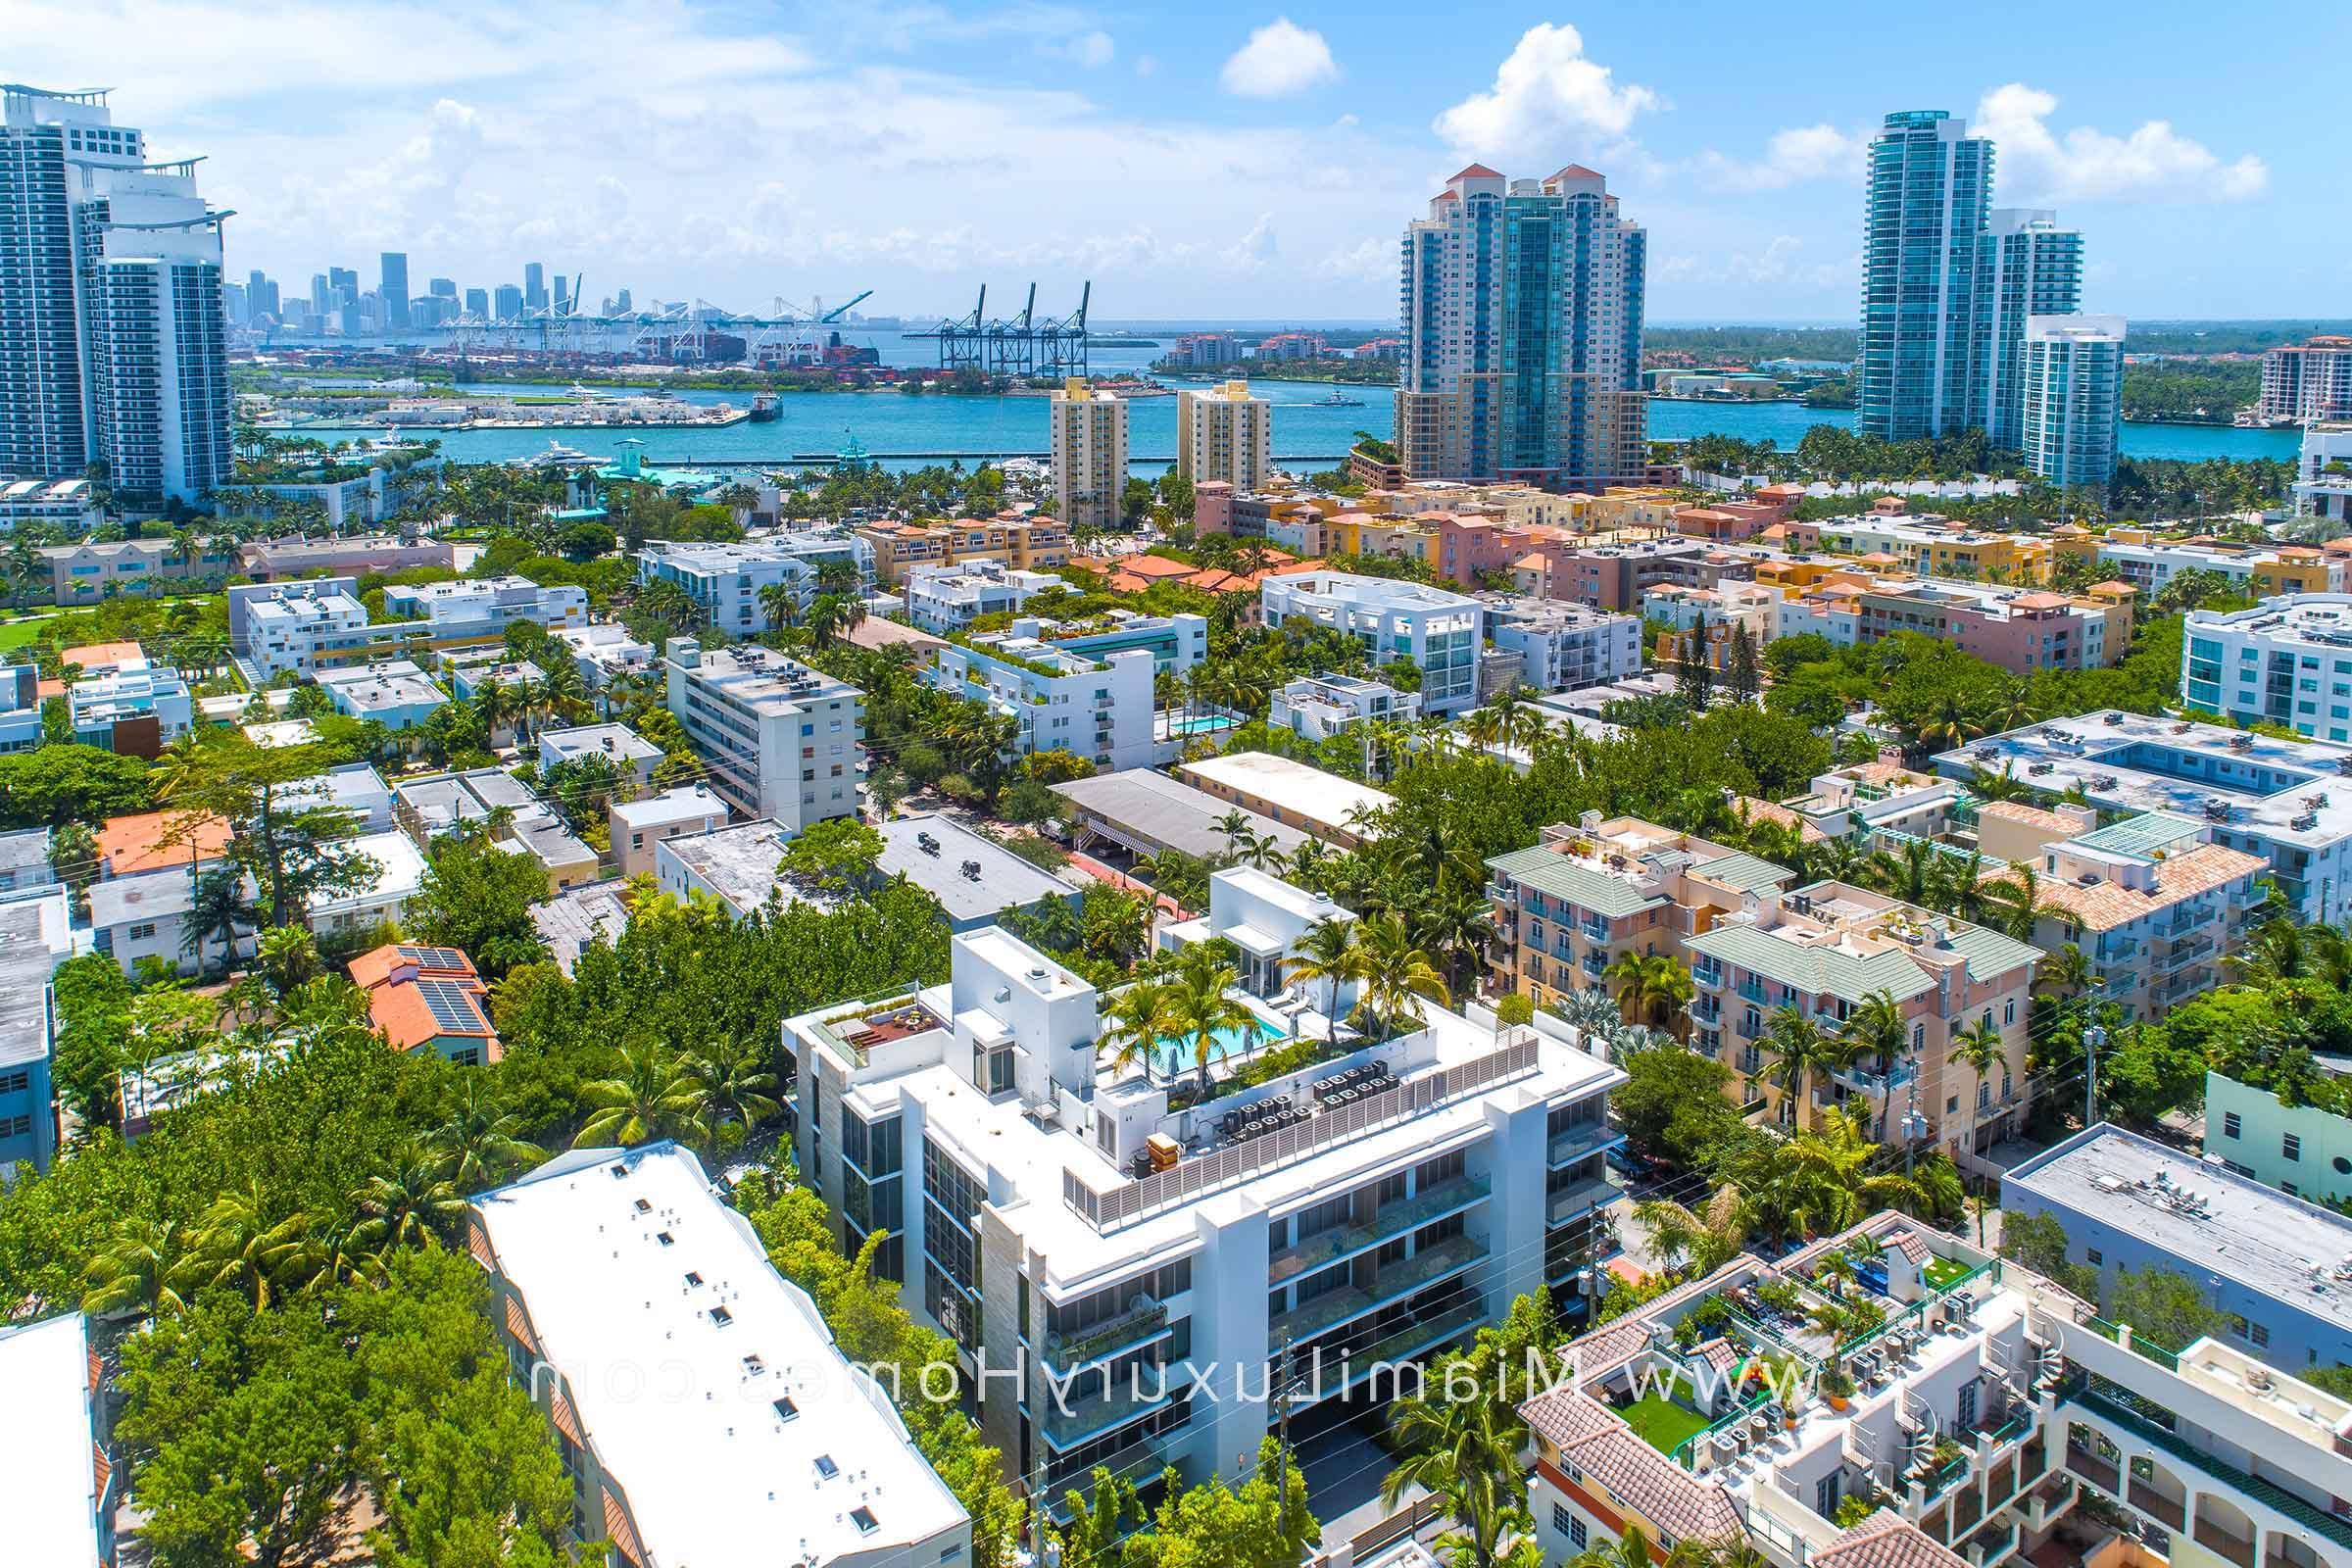 Louver House South Beach Condos in Miami Beach